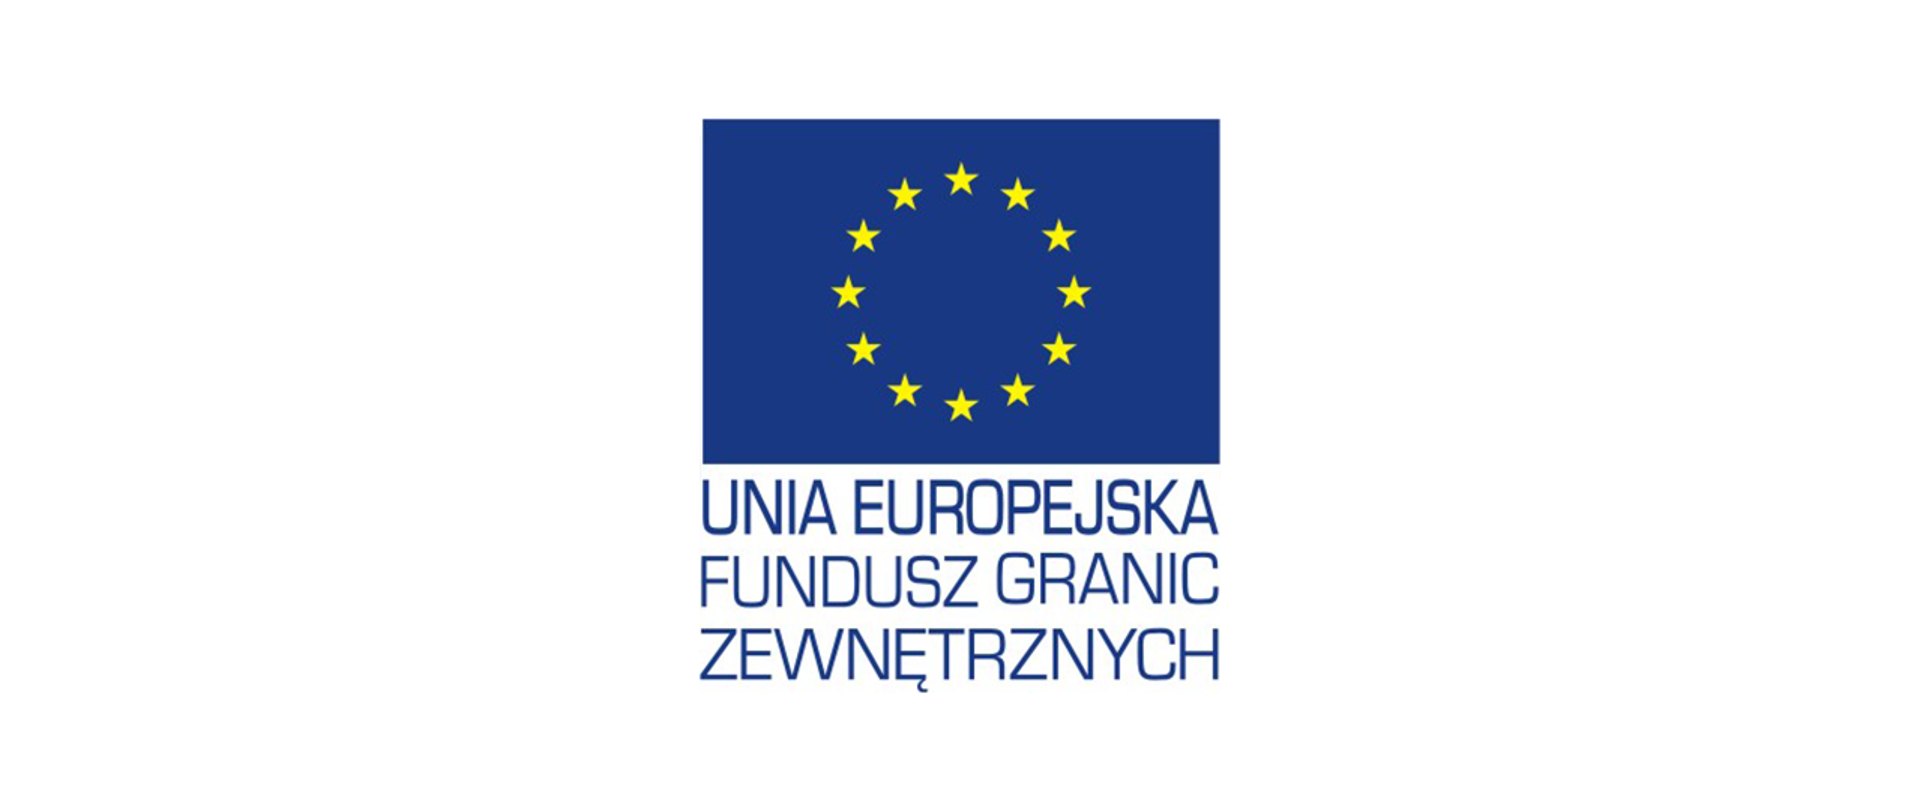 Unia Europejska - Fundusz Granic Zewnętrznych